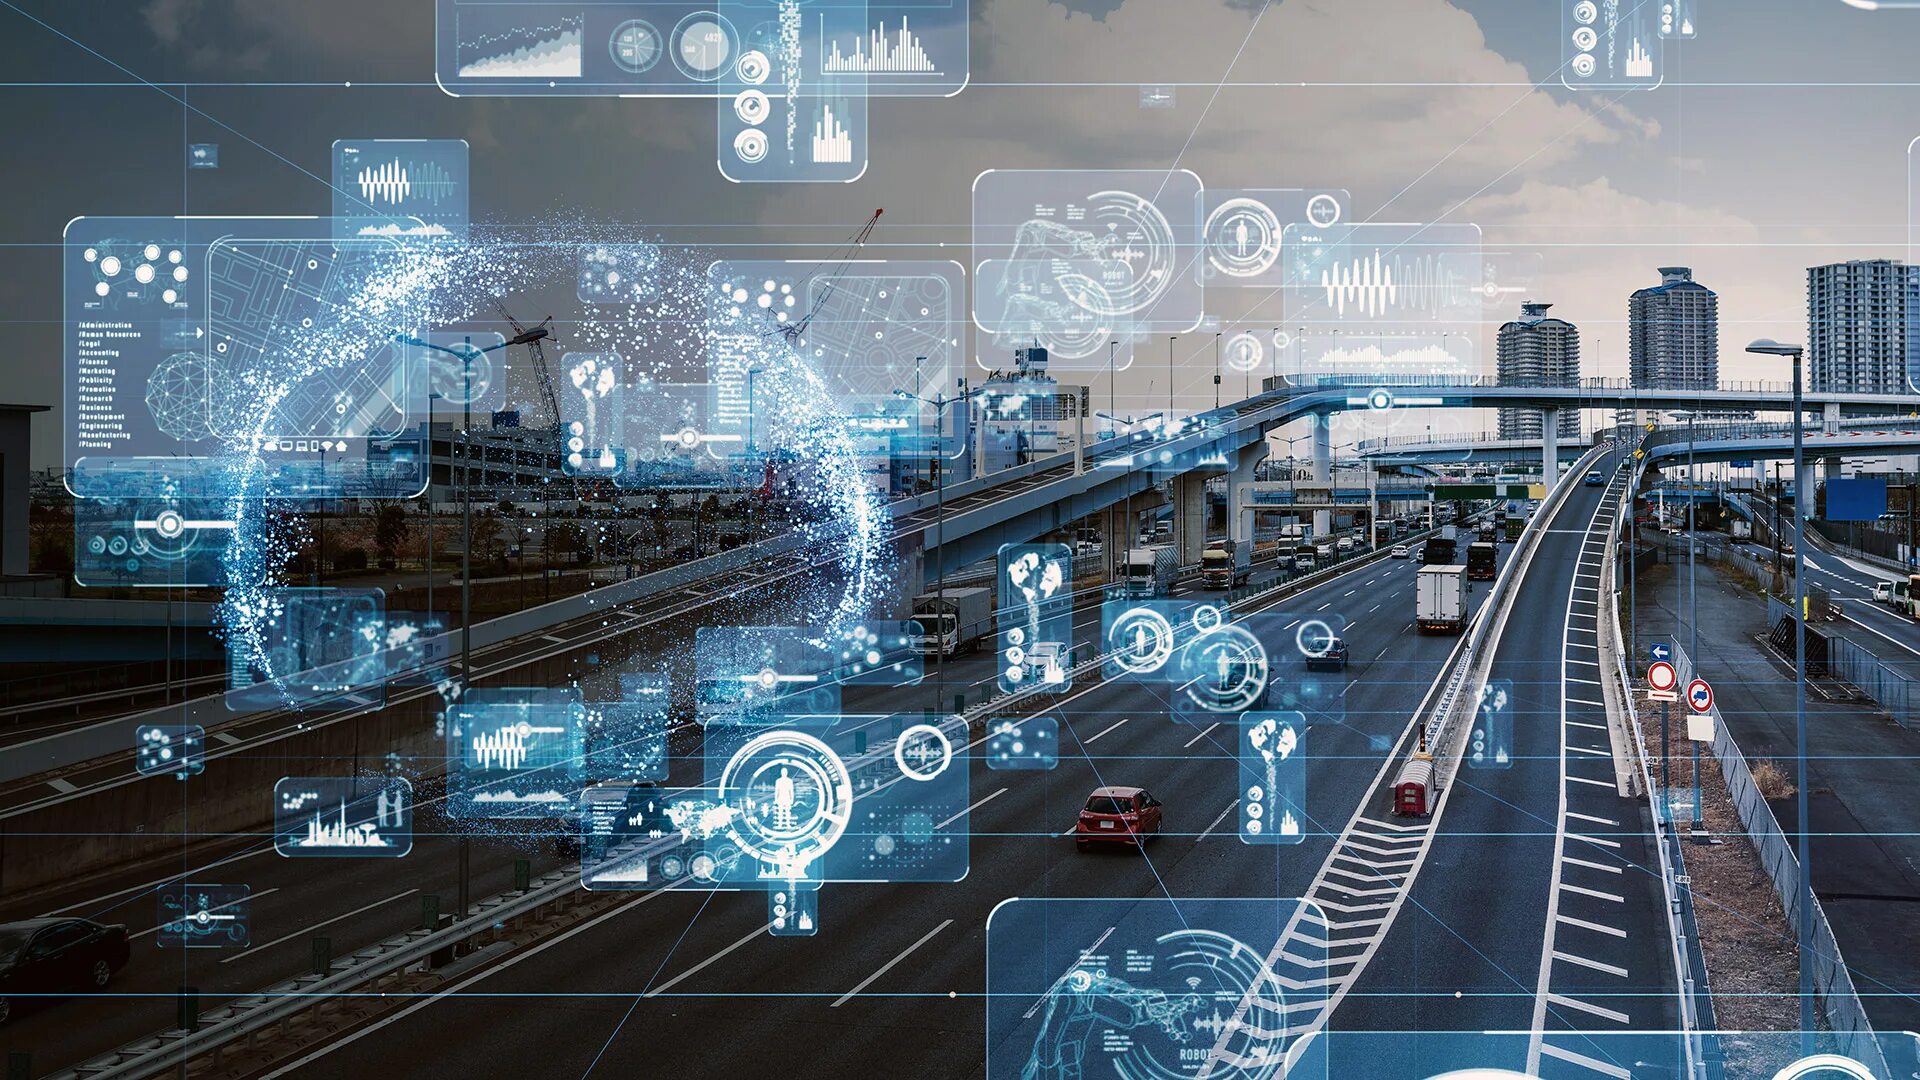 Systems concept. Технологии будущего. Инновационный транспорт. Инфраструктура будущего. Технологичный фон.